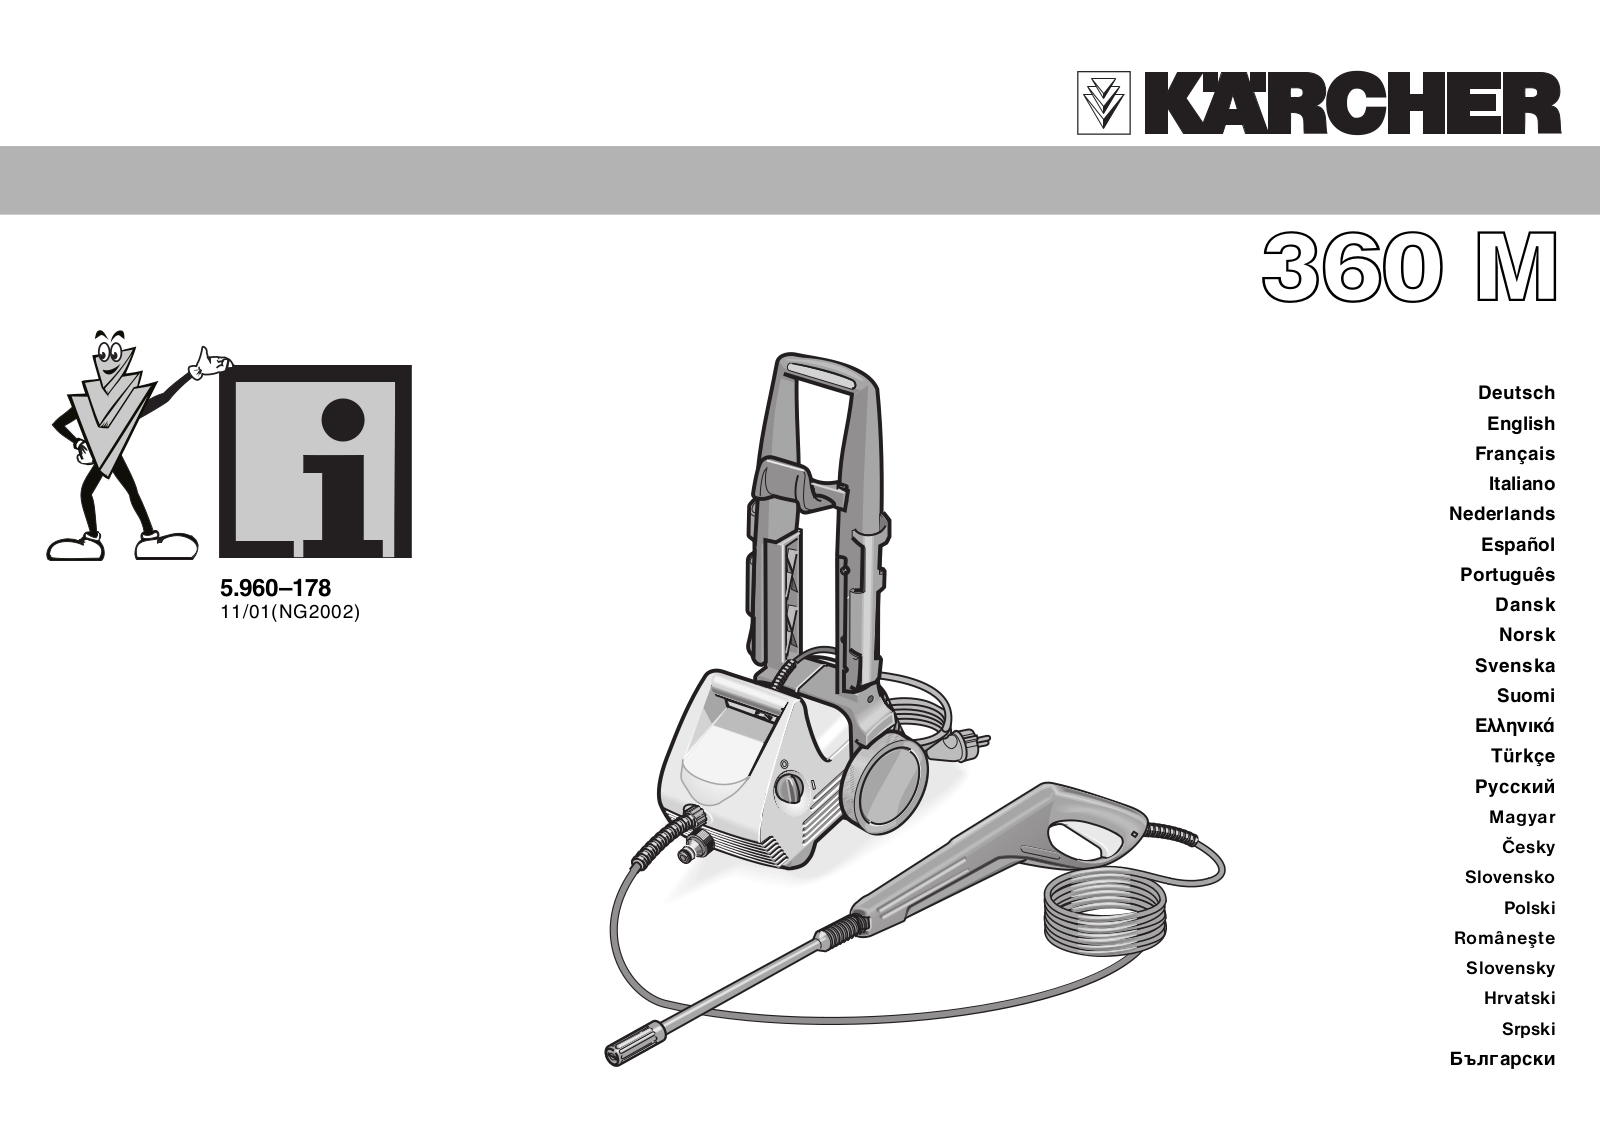 KARCHER 360 M User Manual